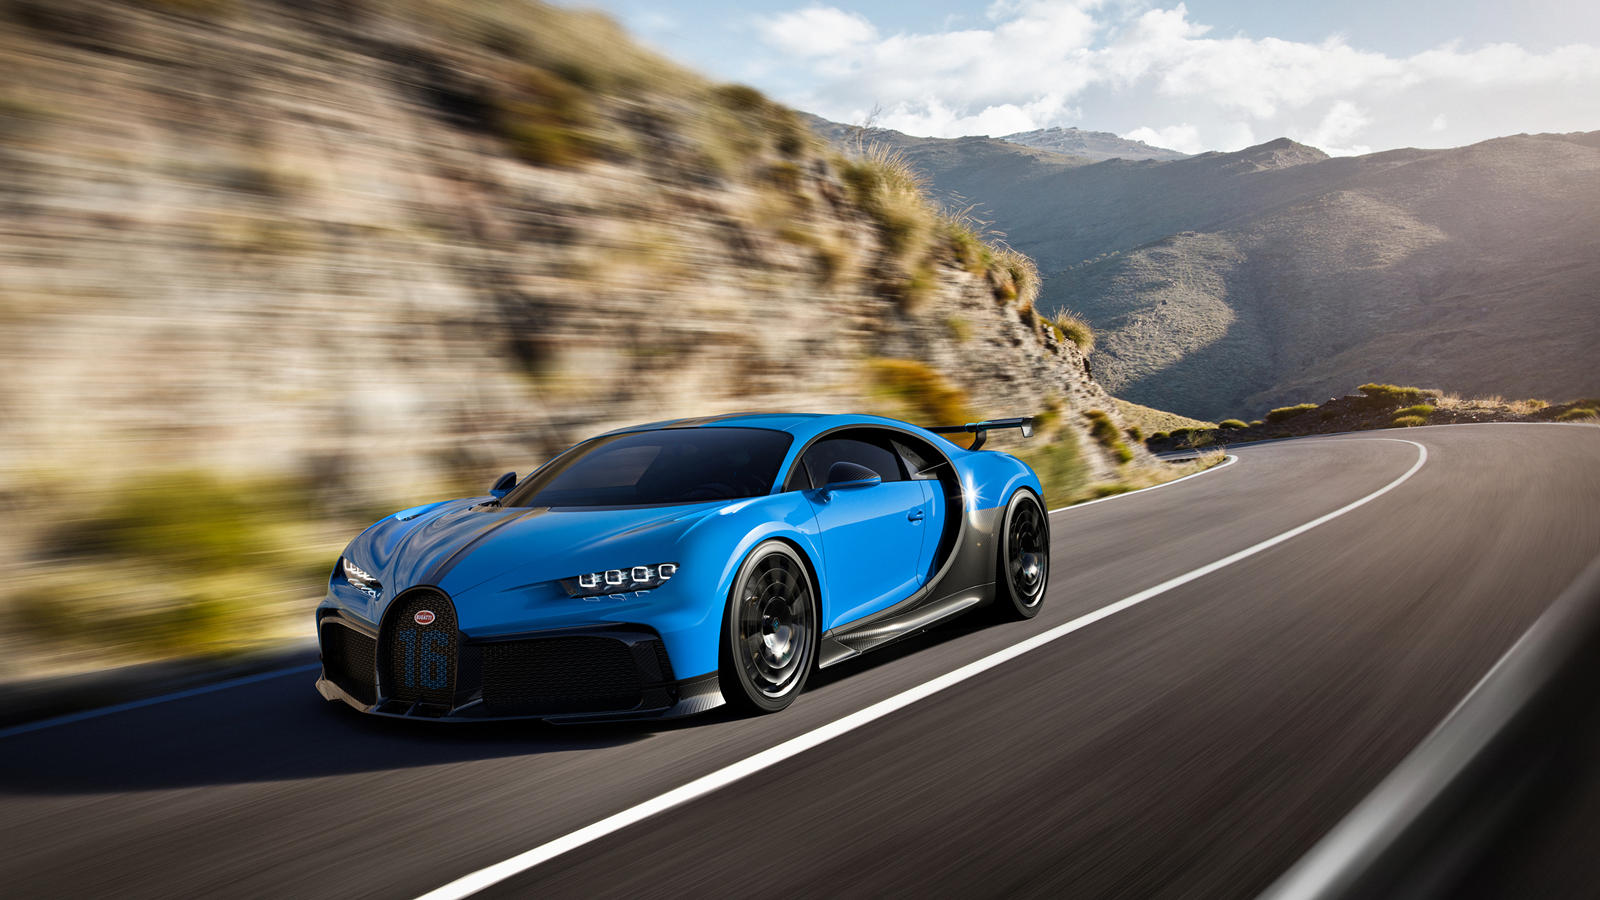 Но для Bugatti это две совершенно разные машины, разработанные с уникальными конечными целями, и, чтобы дать нам больше понимания, дизайнер Фрэнк Хейл подробно остановился на том, что делает каждую из них особенной.